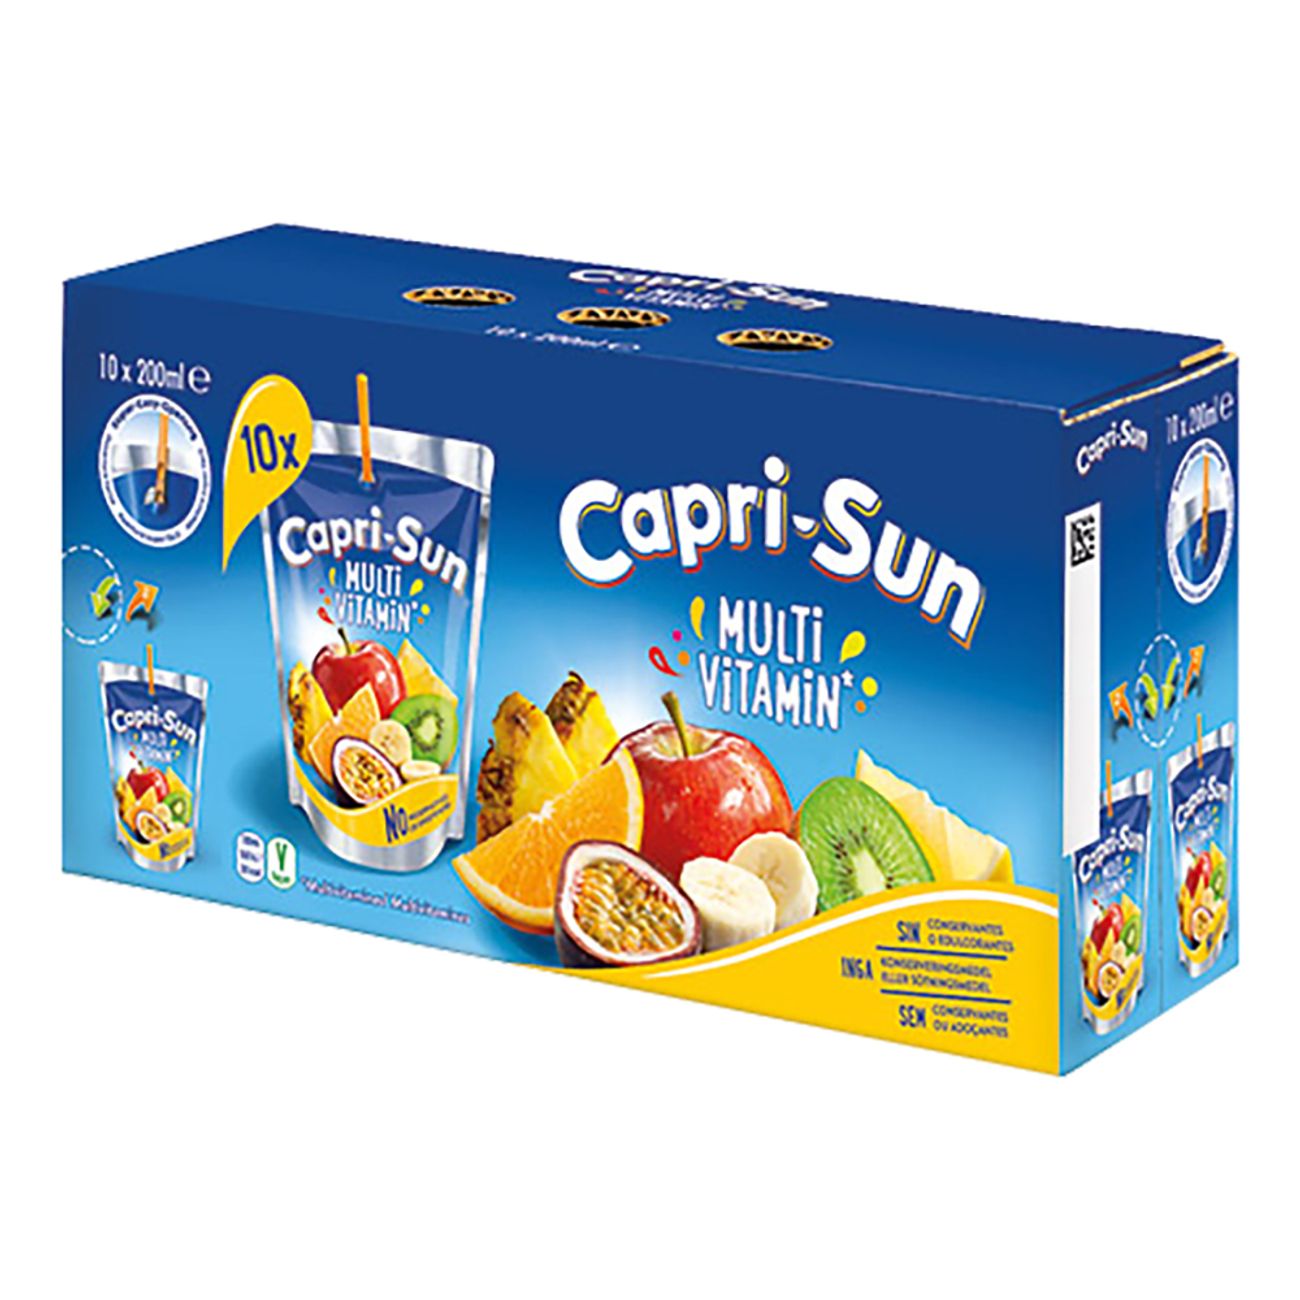 capri-sun-multivitamin-72295-2